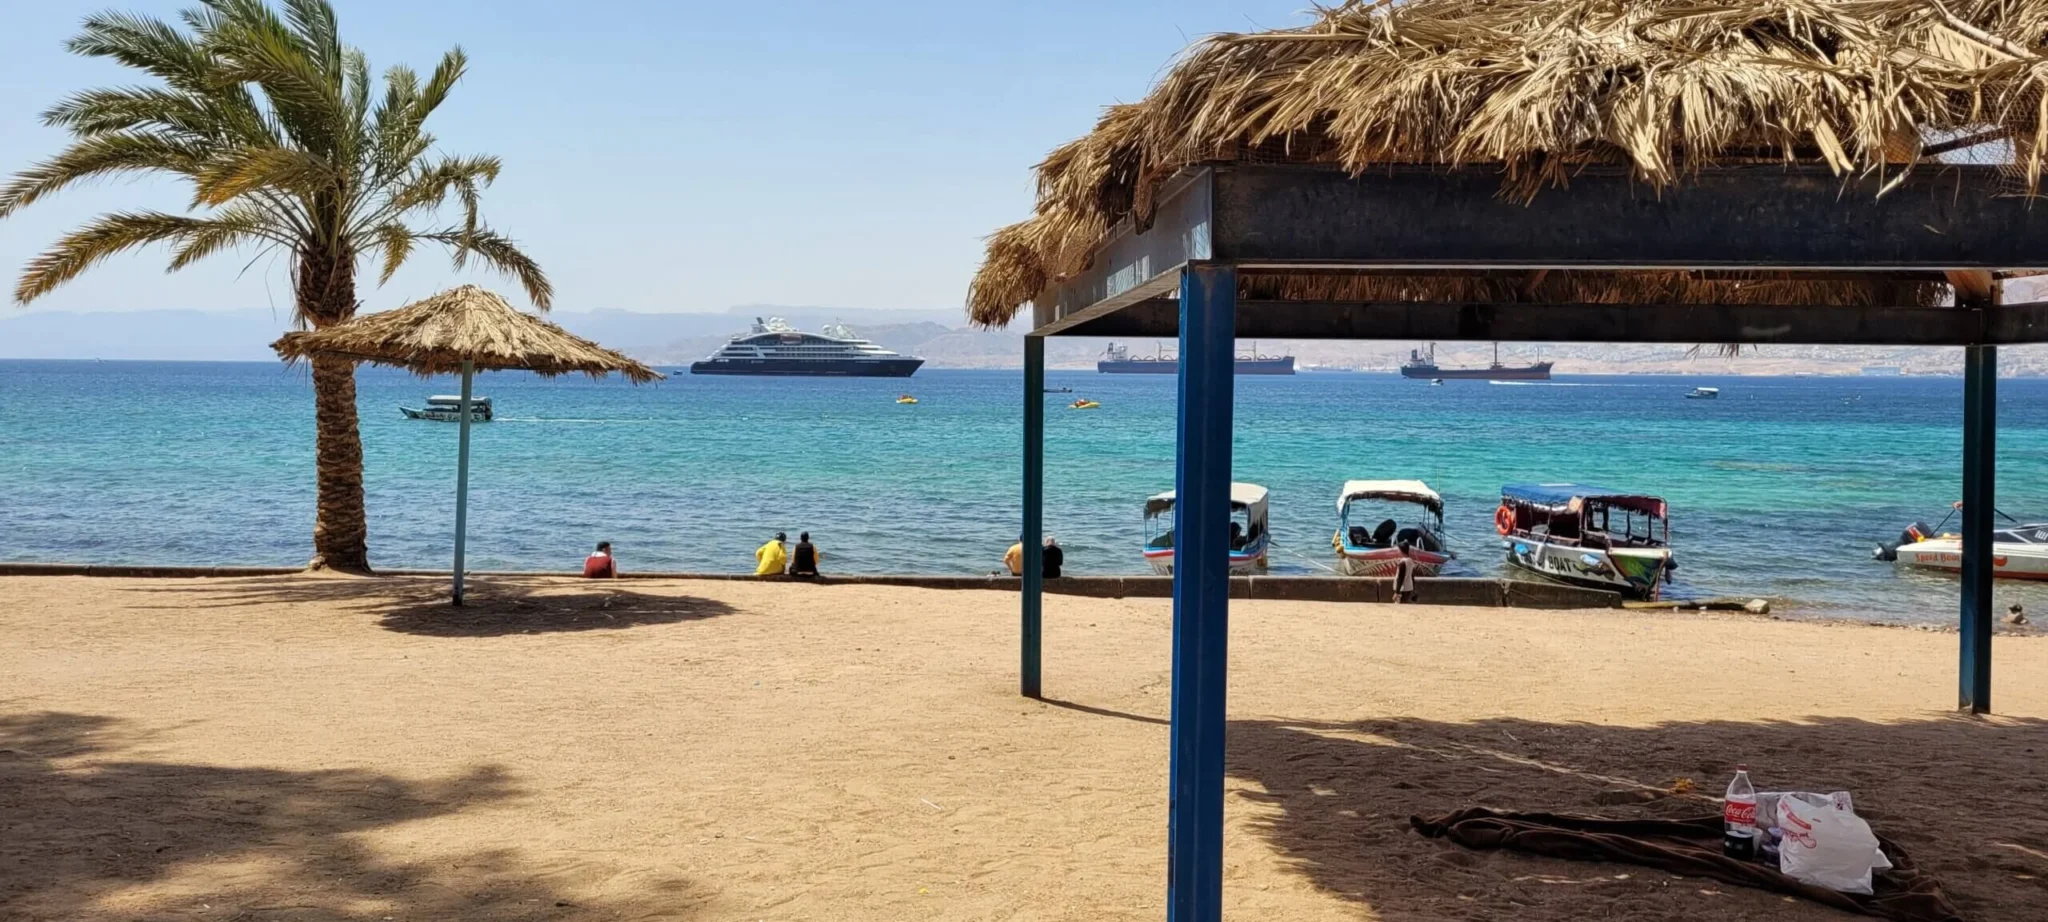 شاطئ الغندور- السياحة في العقبة